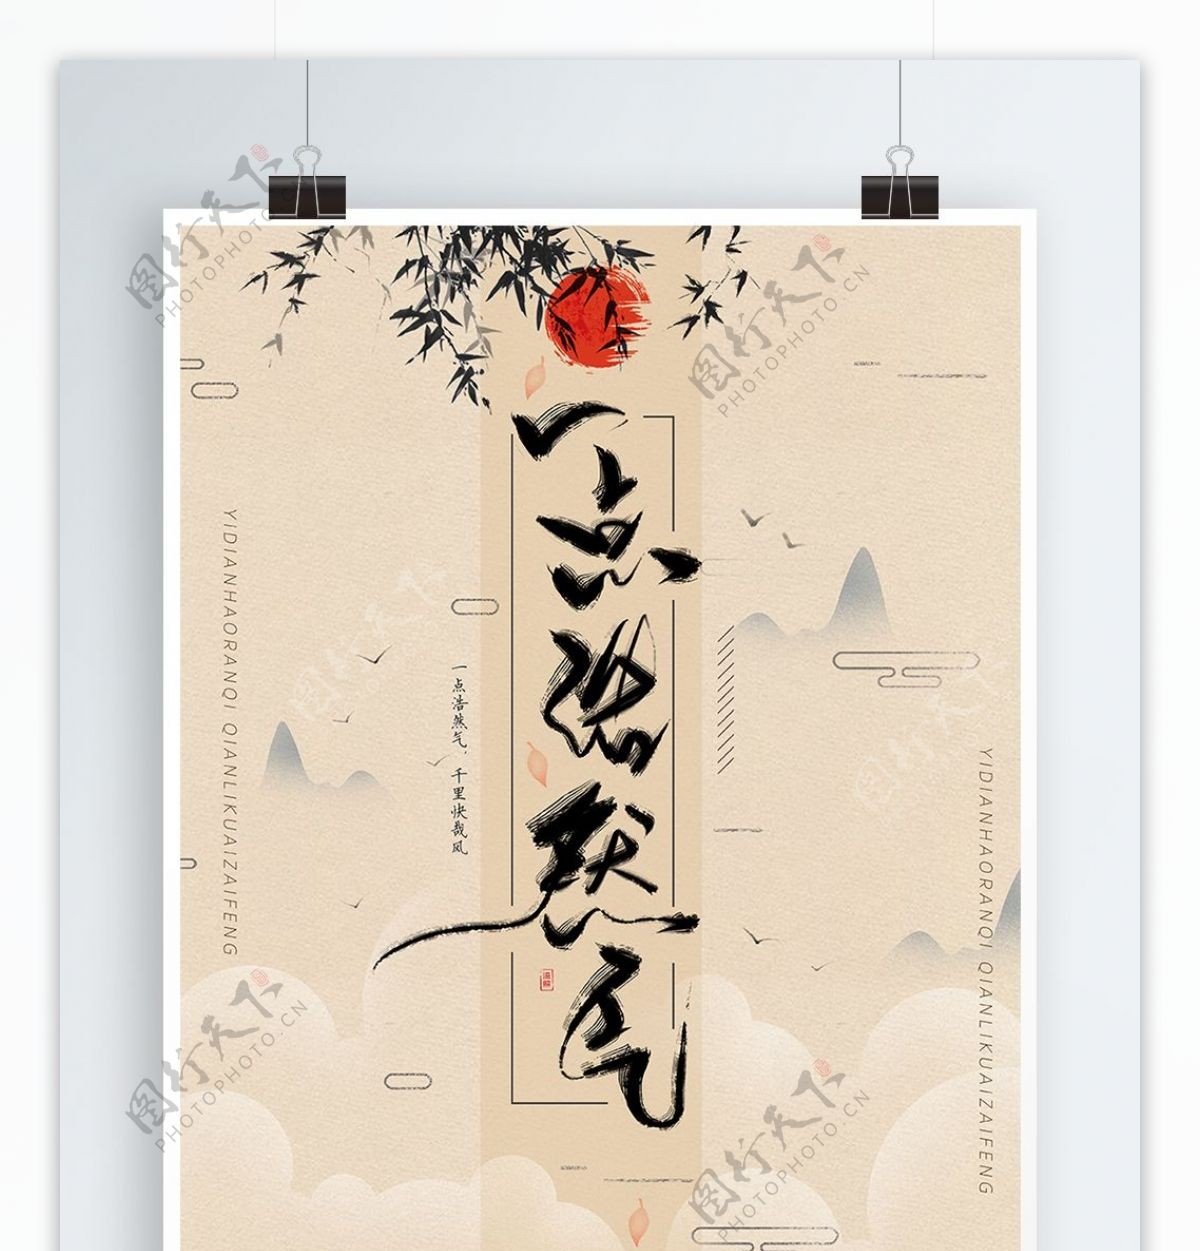 功守道复古中国风水墨书法手写字体海报